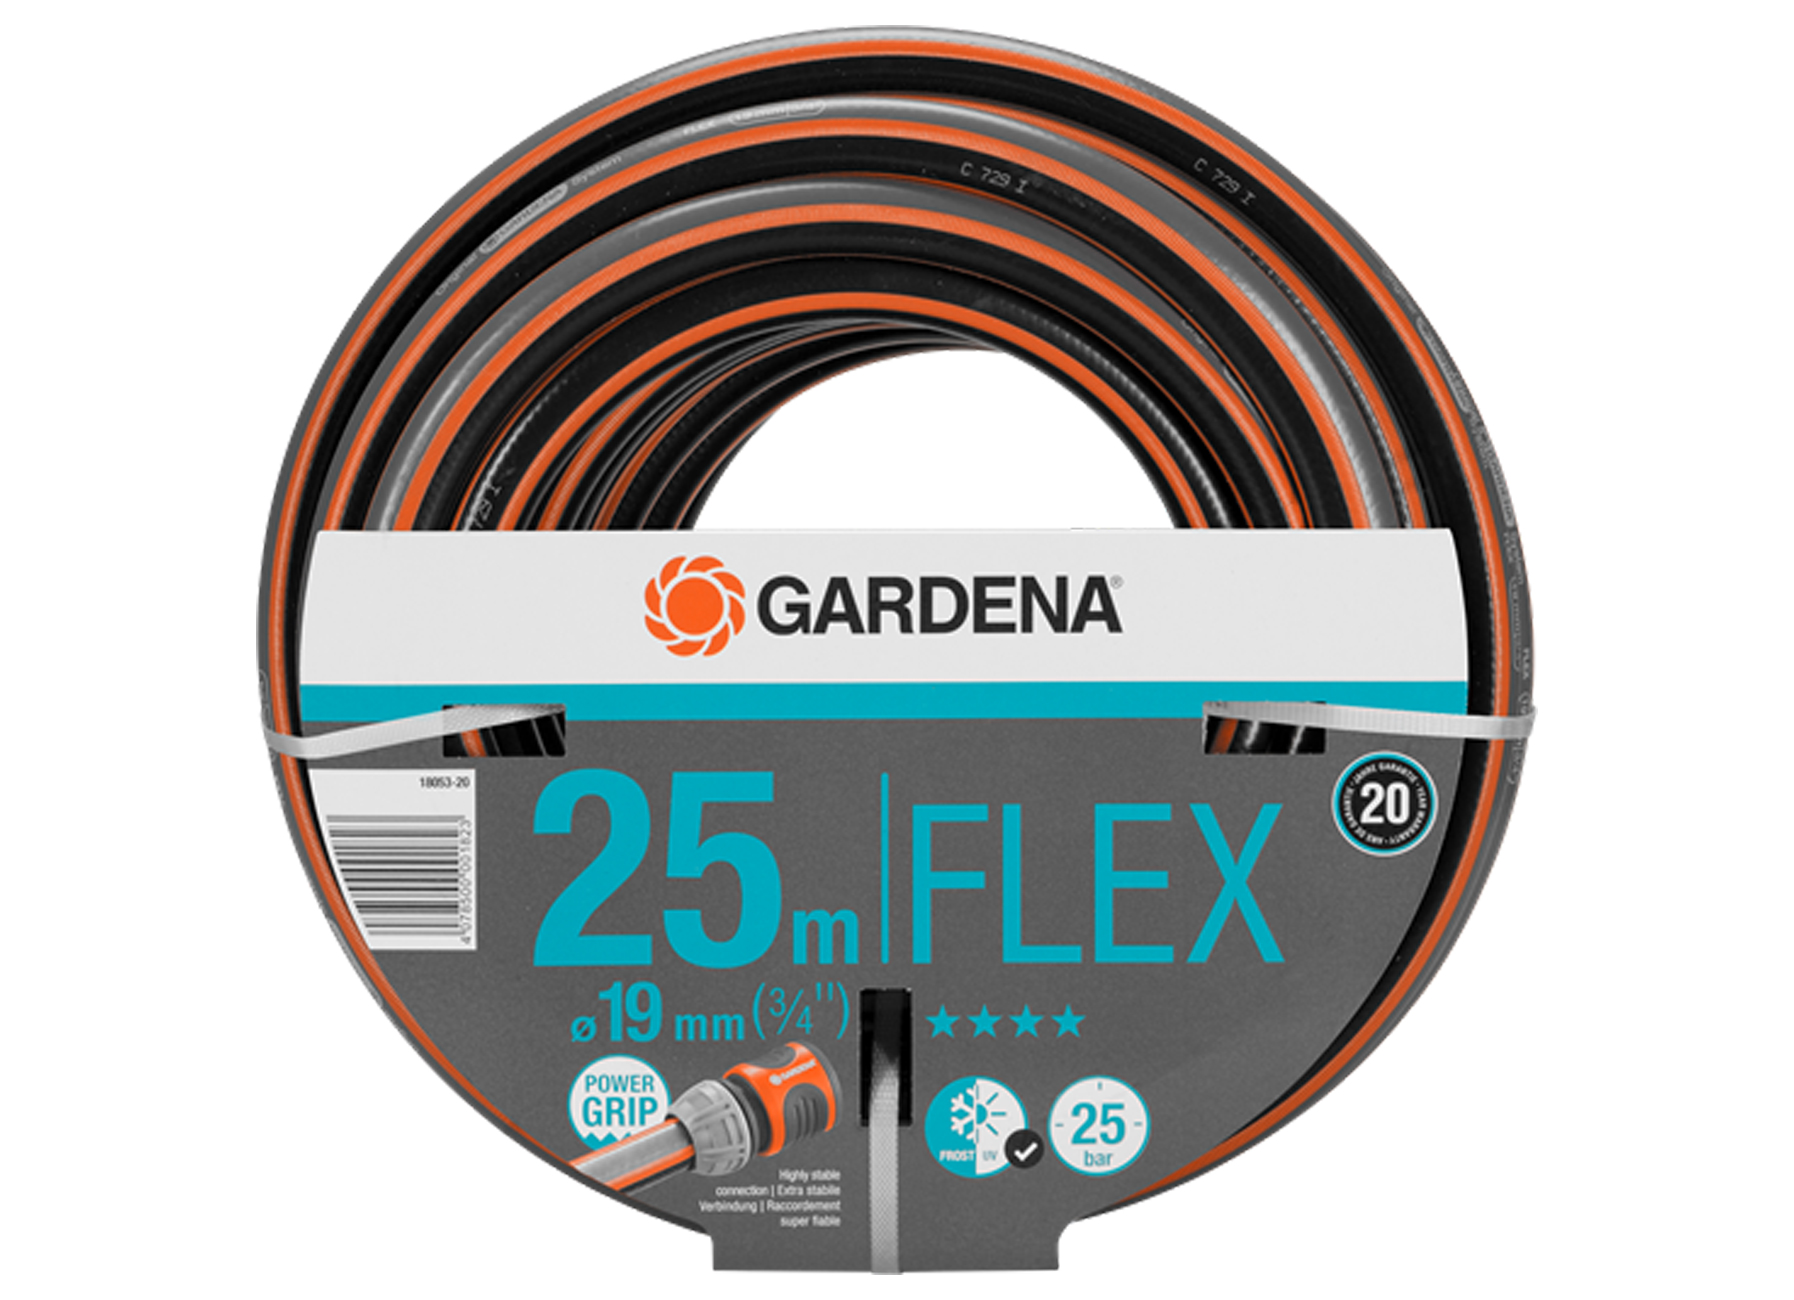 GARDENA TUINSLANG FLEX 19MM (3/4'') 25M